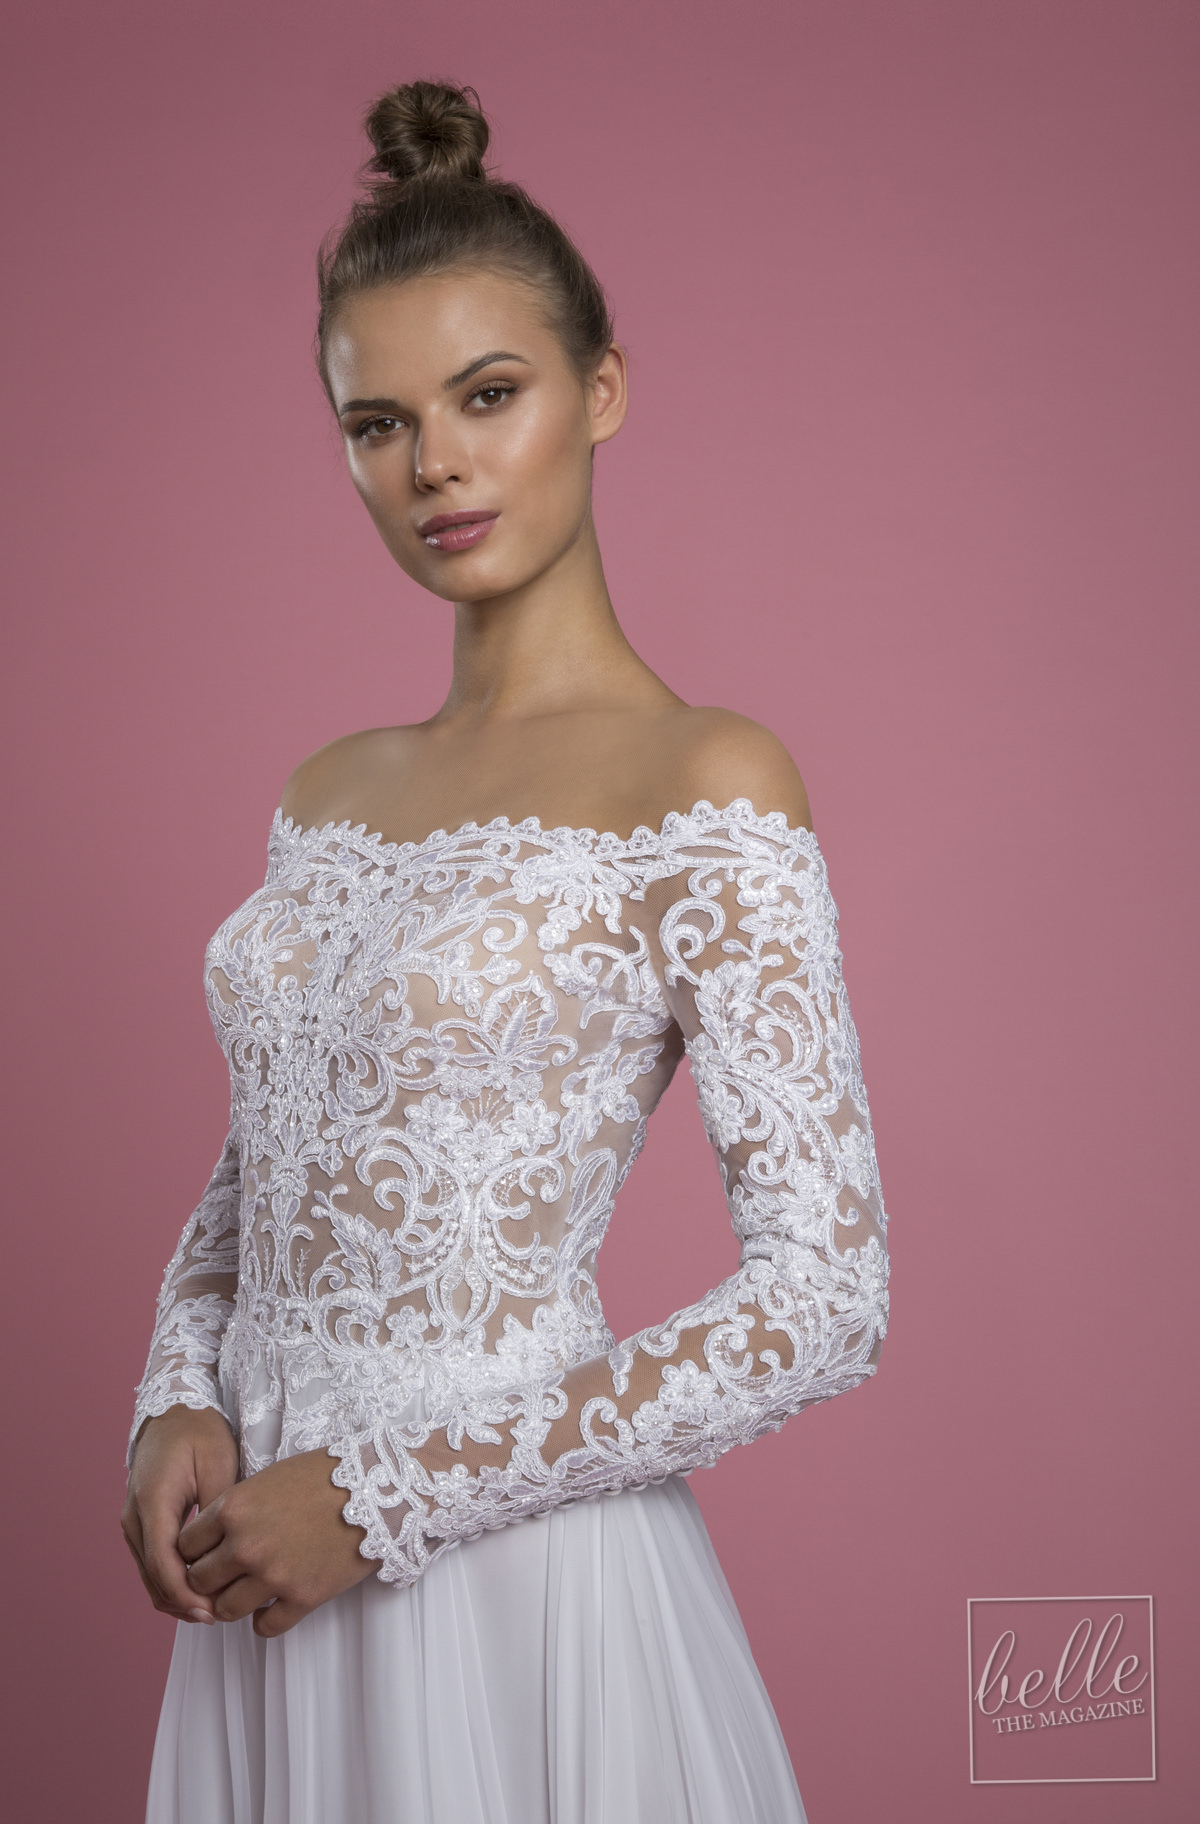 Wedding dress trends 2021 - Minimalist gown - PNINA TORNAI